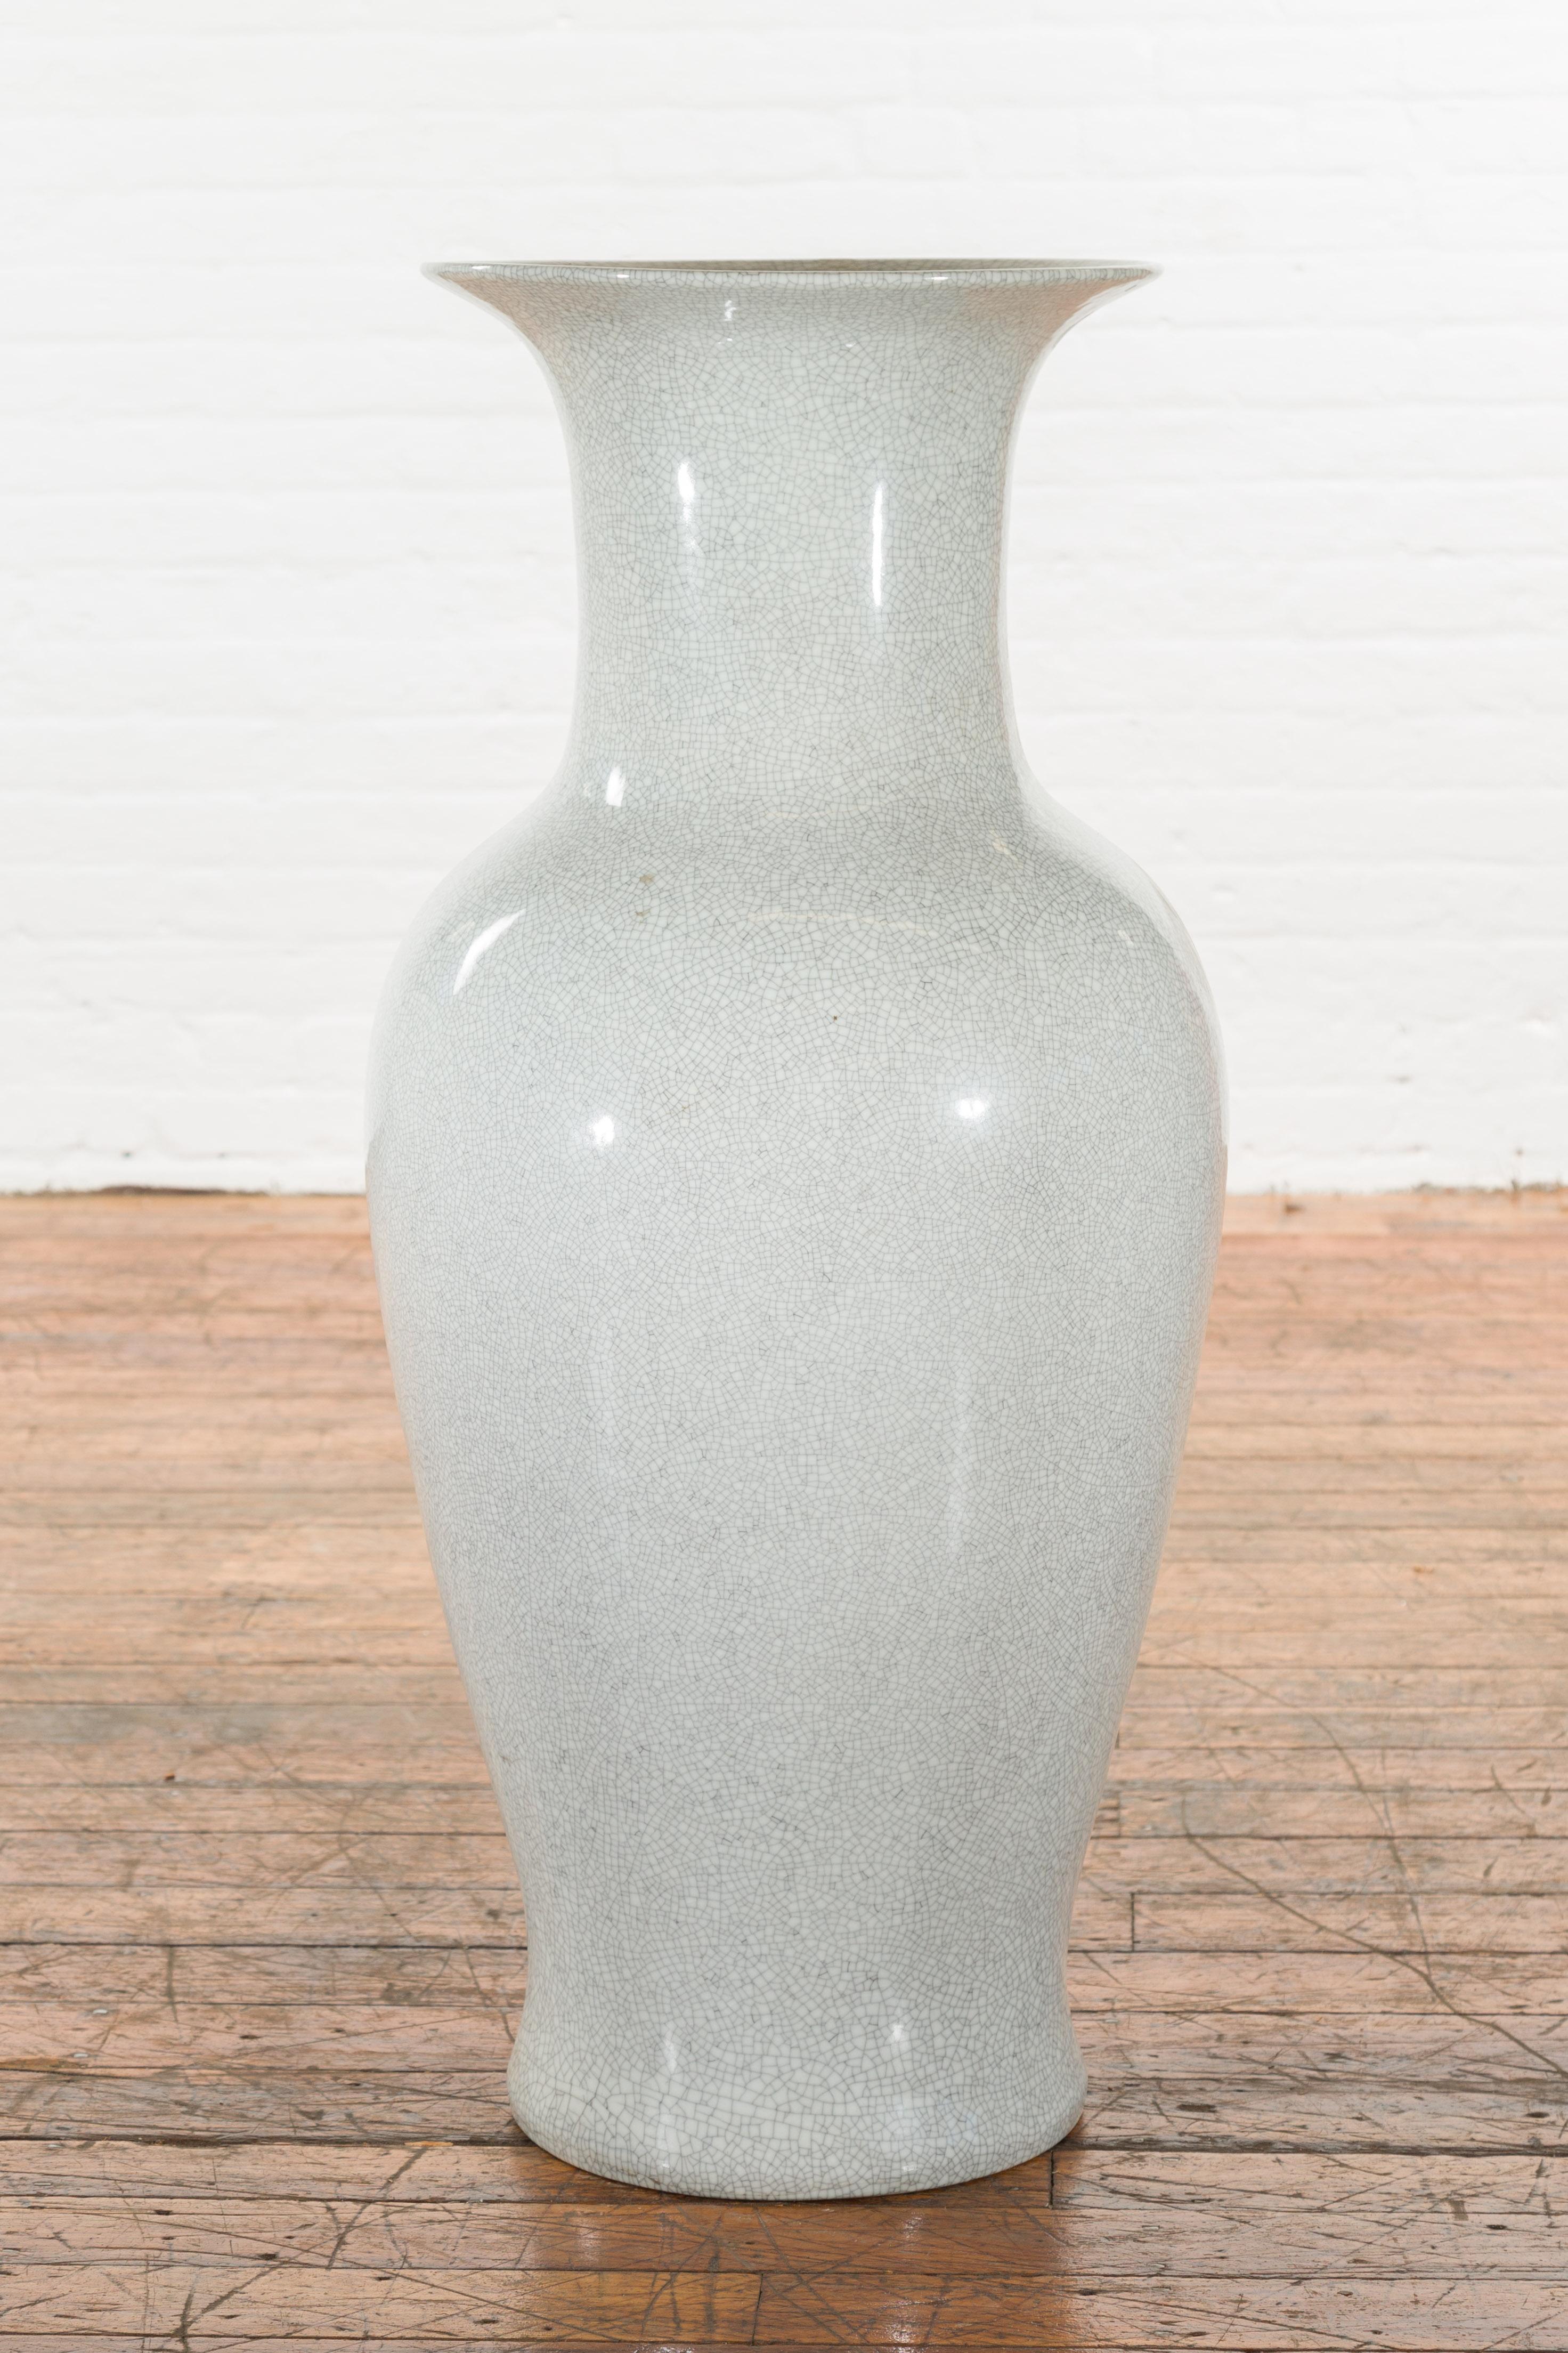 Eine chinesische extra große graue Altarvase aus der Mitte des 20. Jahrhunderts, mit Craquelé-Finish. Diese extragroße Vase wurde um die Jahrhundertmitte in China hergestellt. Sie hat einen ausladenden Hals (mit einer Öffnung von 6,5 Zoll